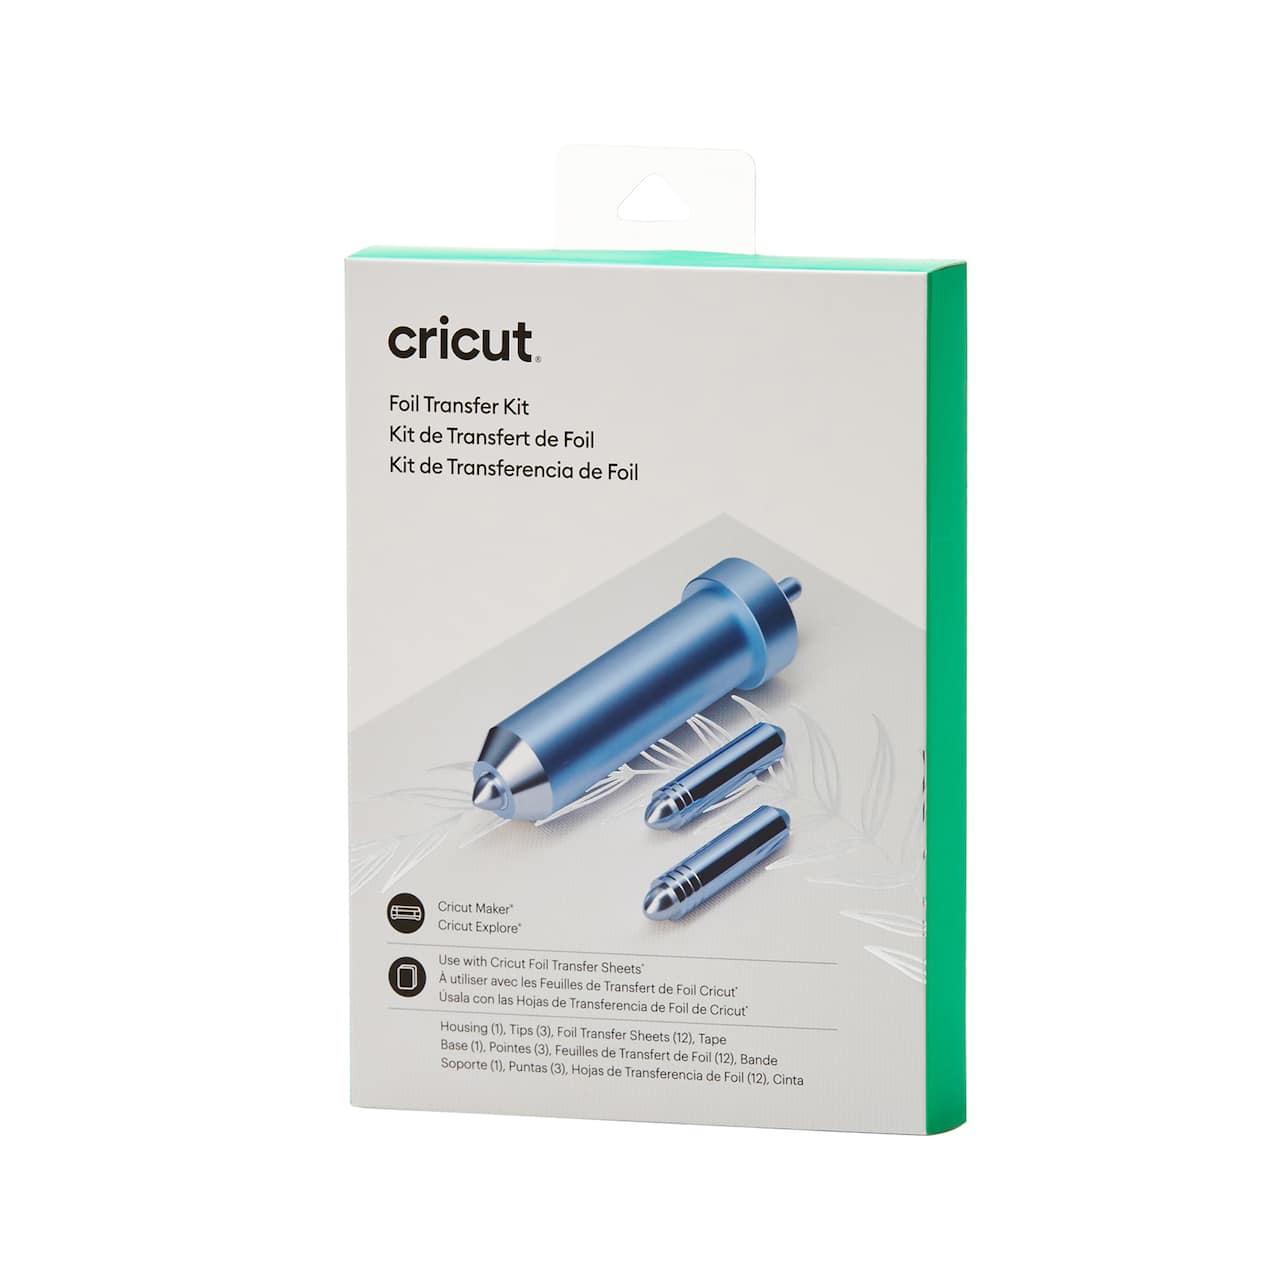 Cricut&#xAE; Foil Transfer Kit